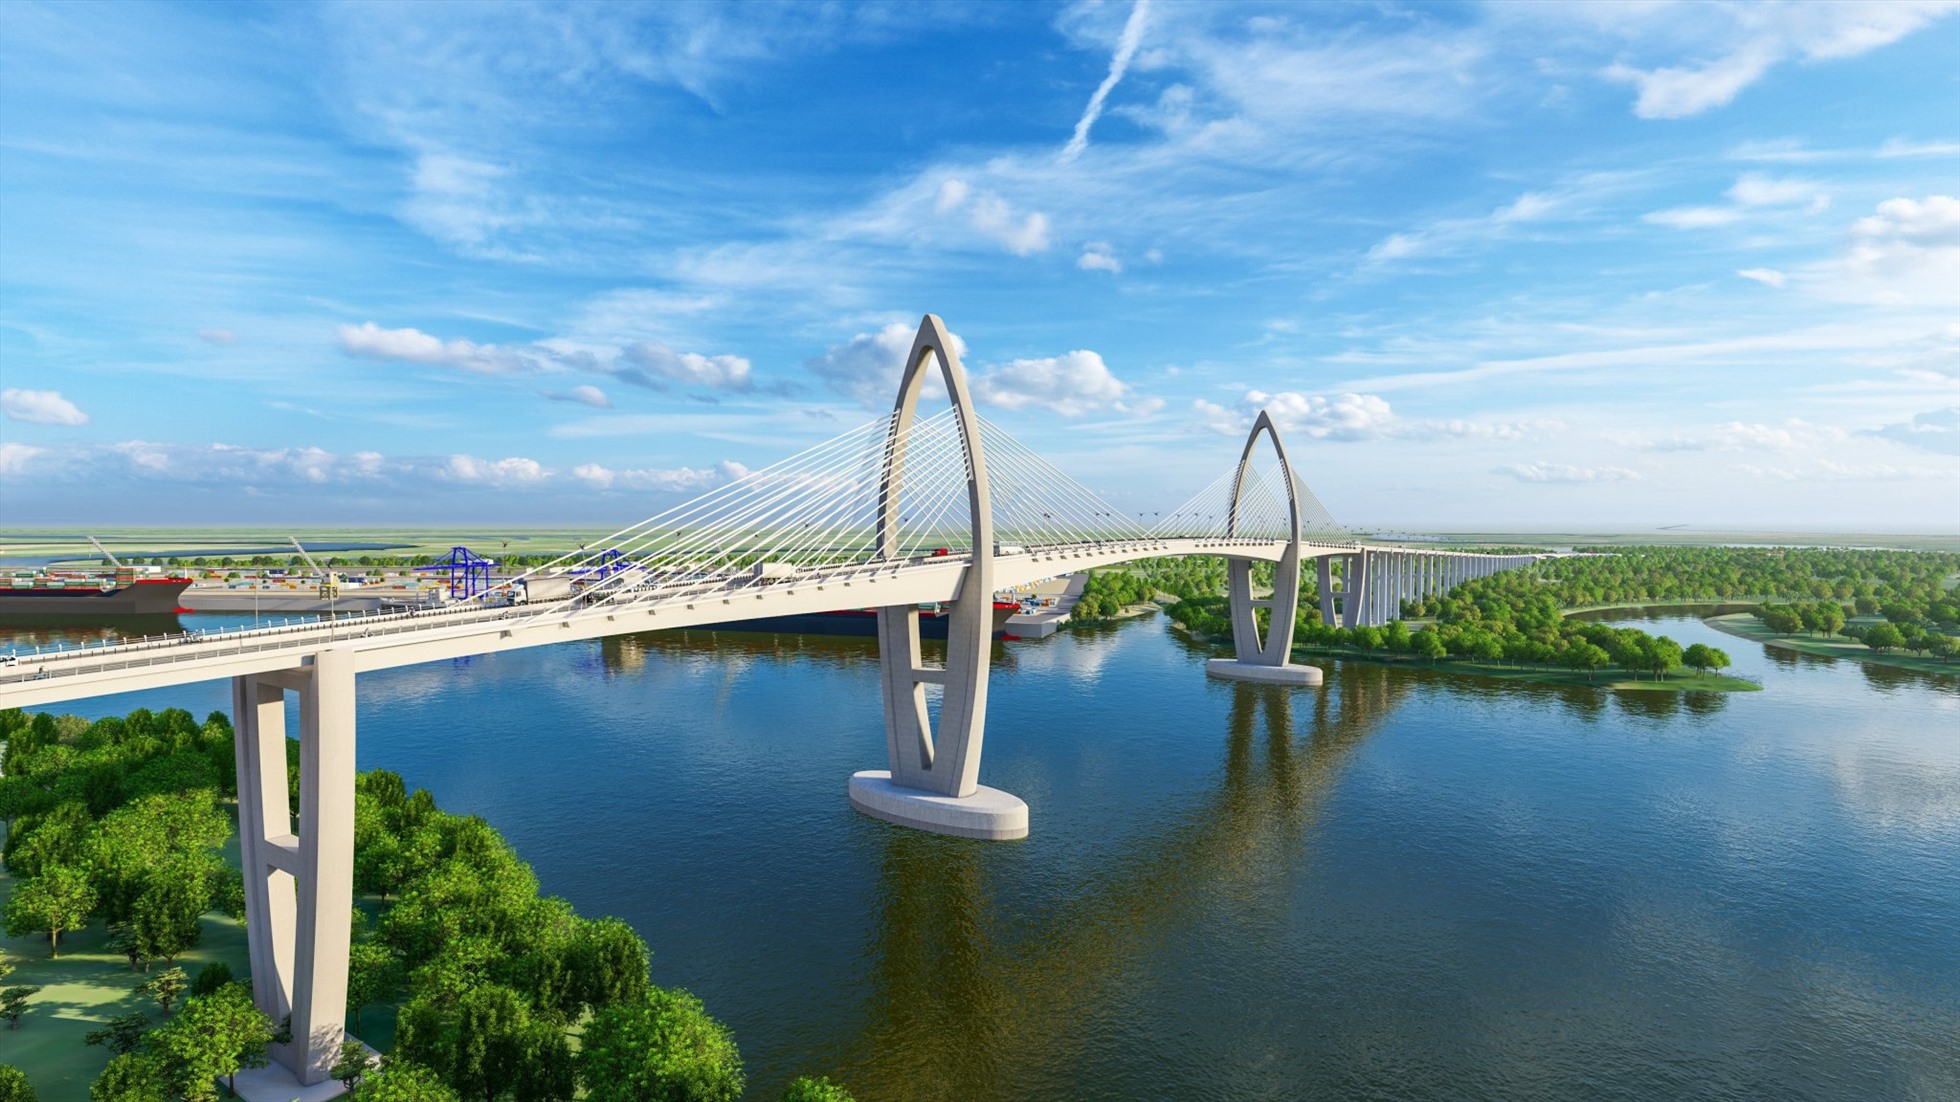 Cùng với cao tốc Biên Hoà - Vũng Tàu, dự án cầu Phước An sẽ góp phần khai thác hiệu quả Cụm cảng Cái Mép-Thị Vải.